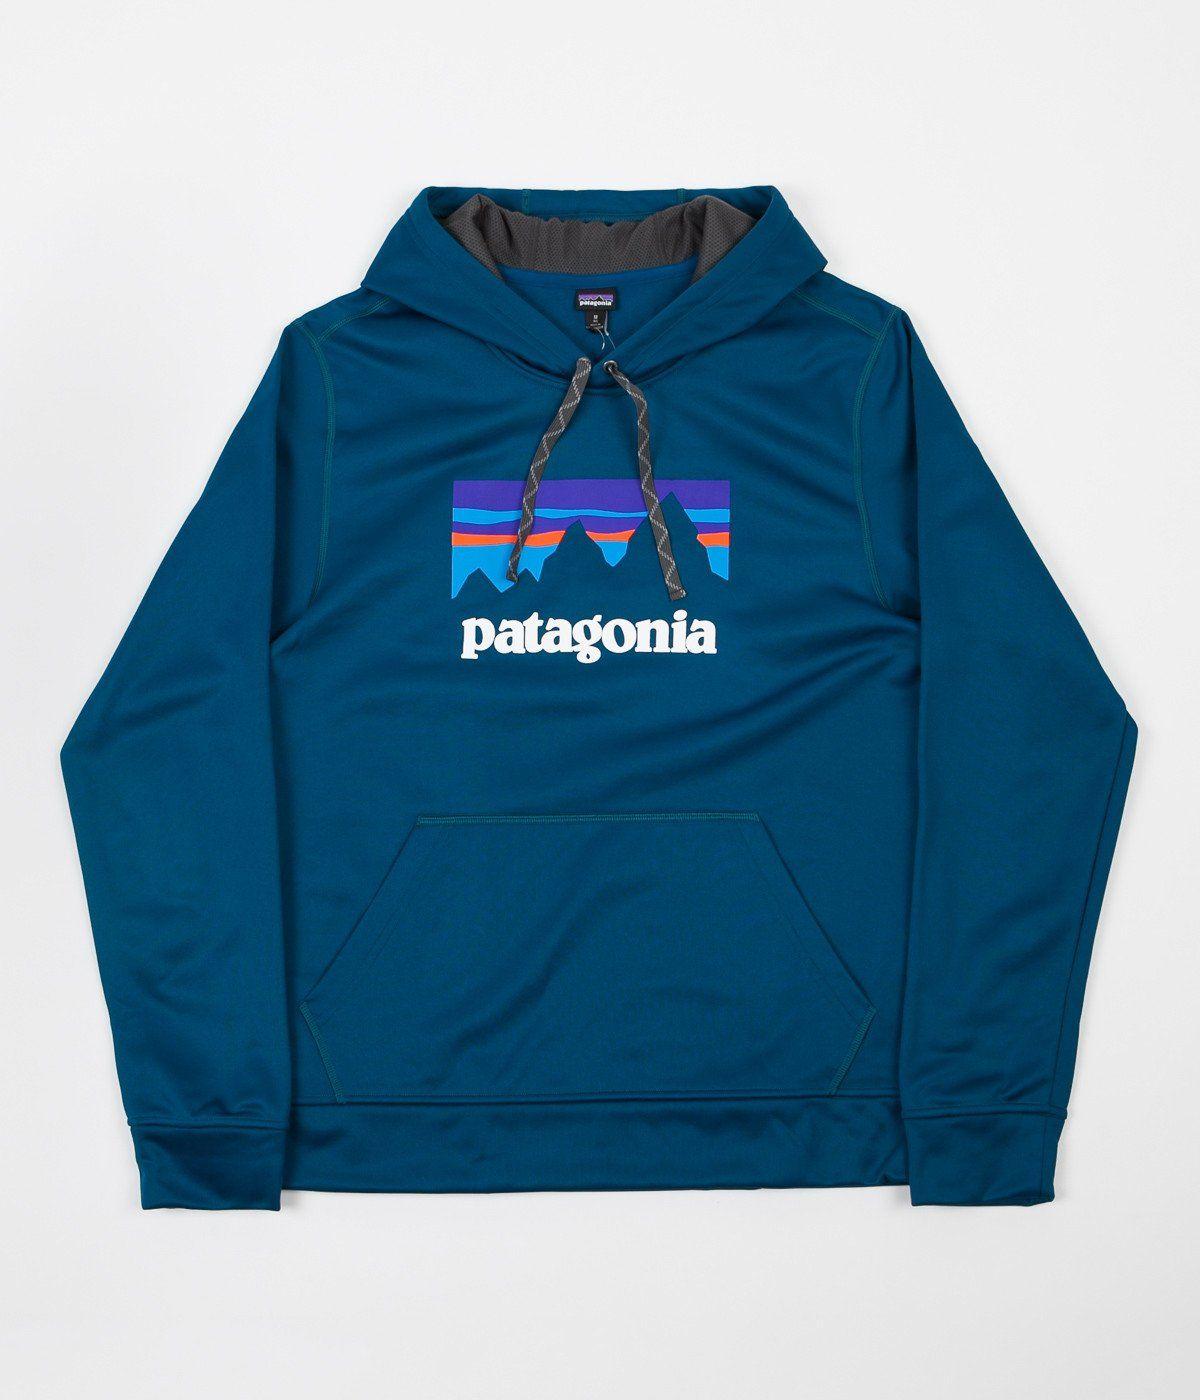 Patagonia Clothing Logo - Patagonia Shop Sticker Hoodie - Big Sur Blue | Flatspot